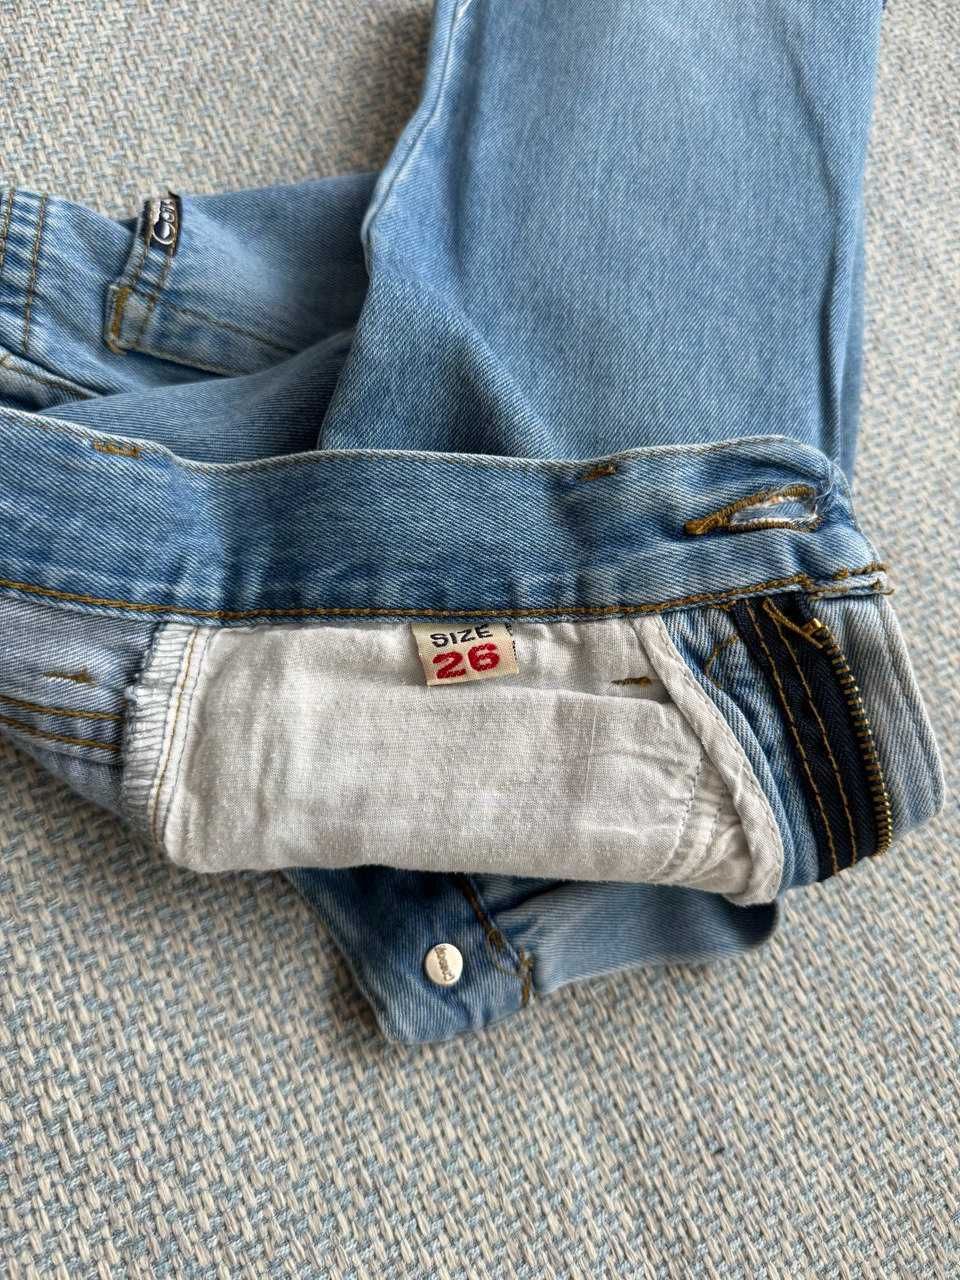 Джинсовые шорты на 6-8 лет, длина от пояса до низа 40,5 см